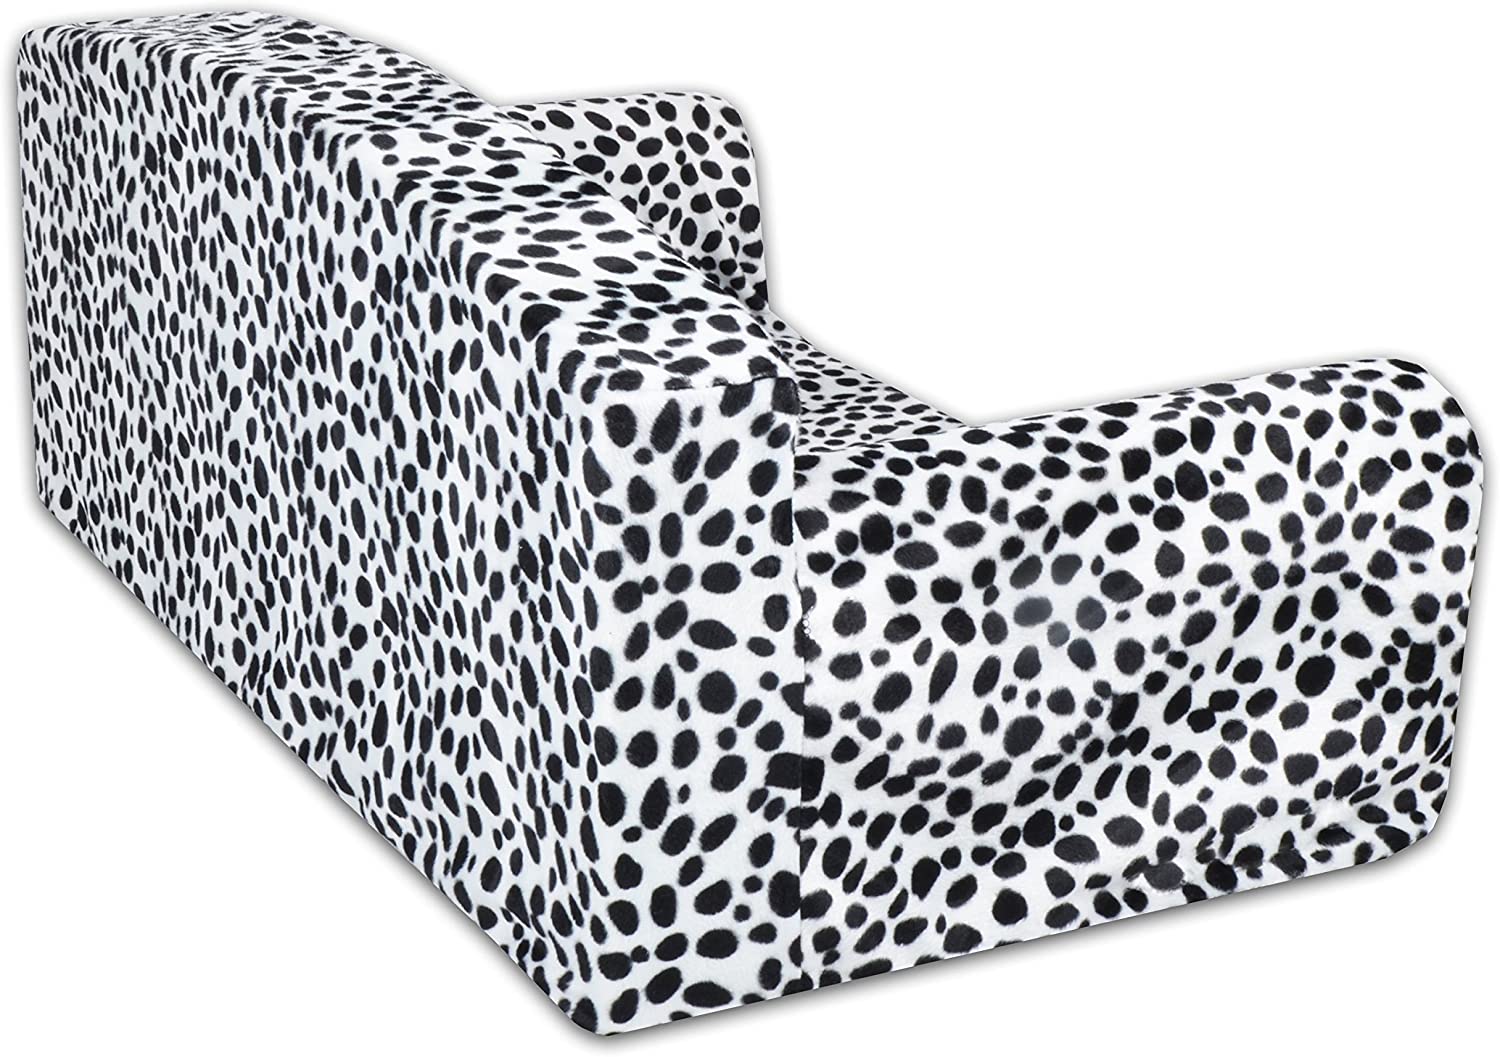  Animal - Sofá para mascota, diseño de dálmata,cama de 3 tamaños para perro,funda de material de alta calidad,fabricado en el Reino Unido 